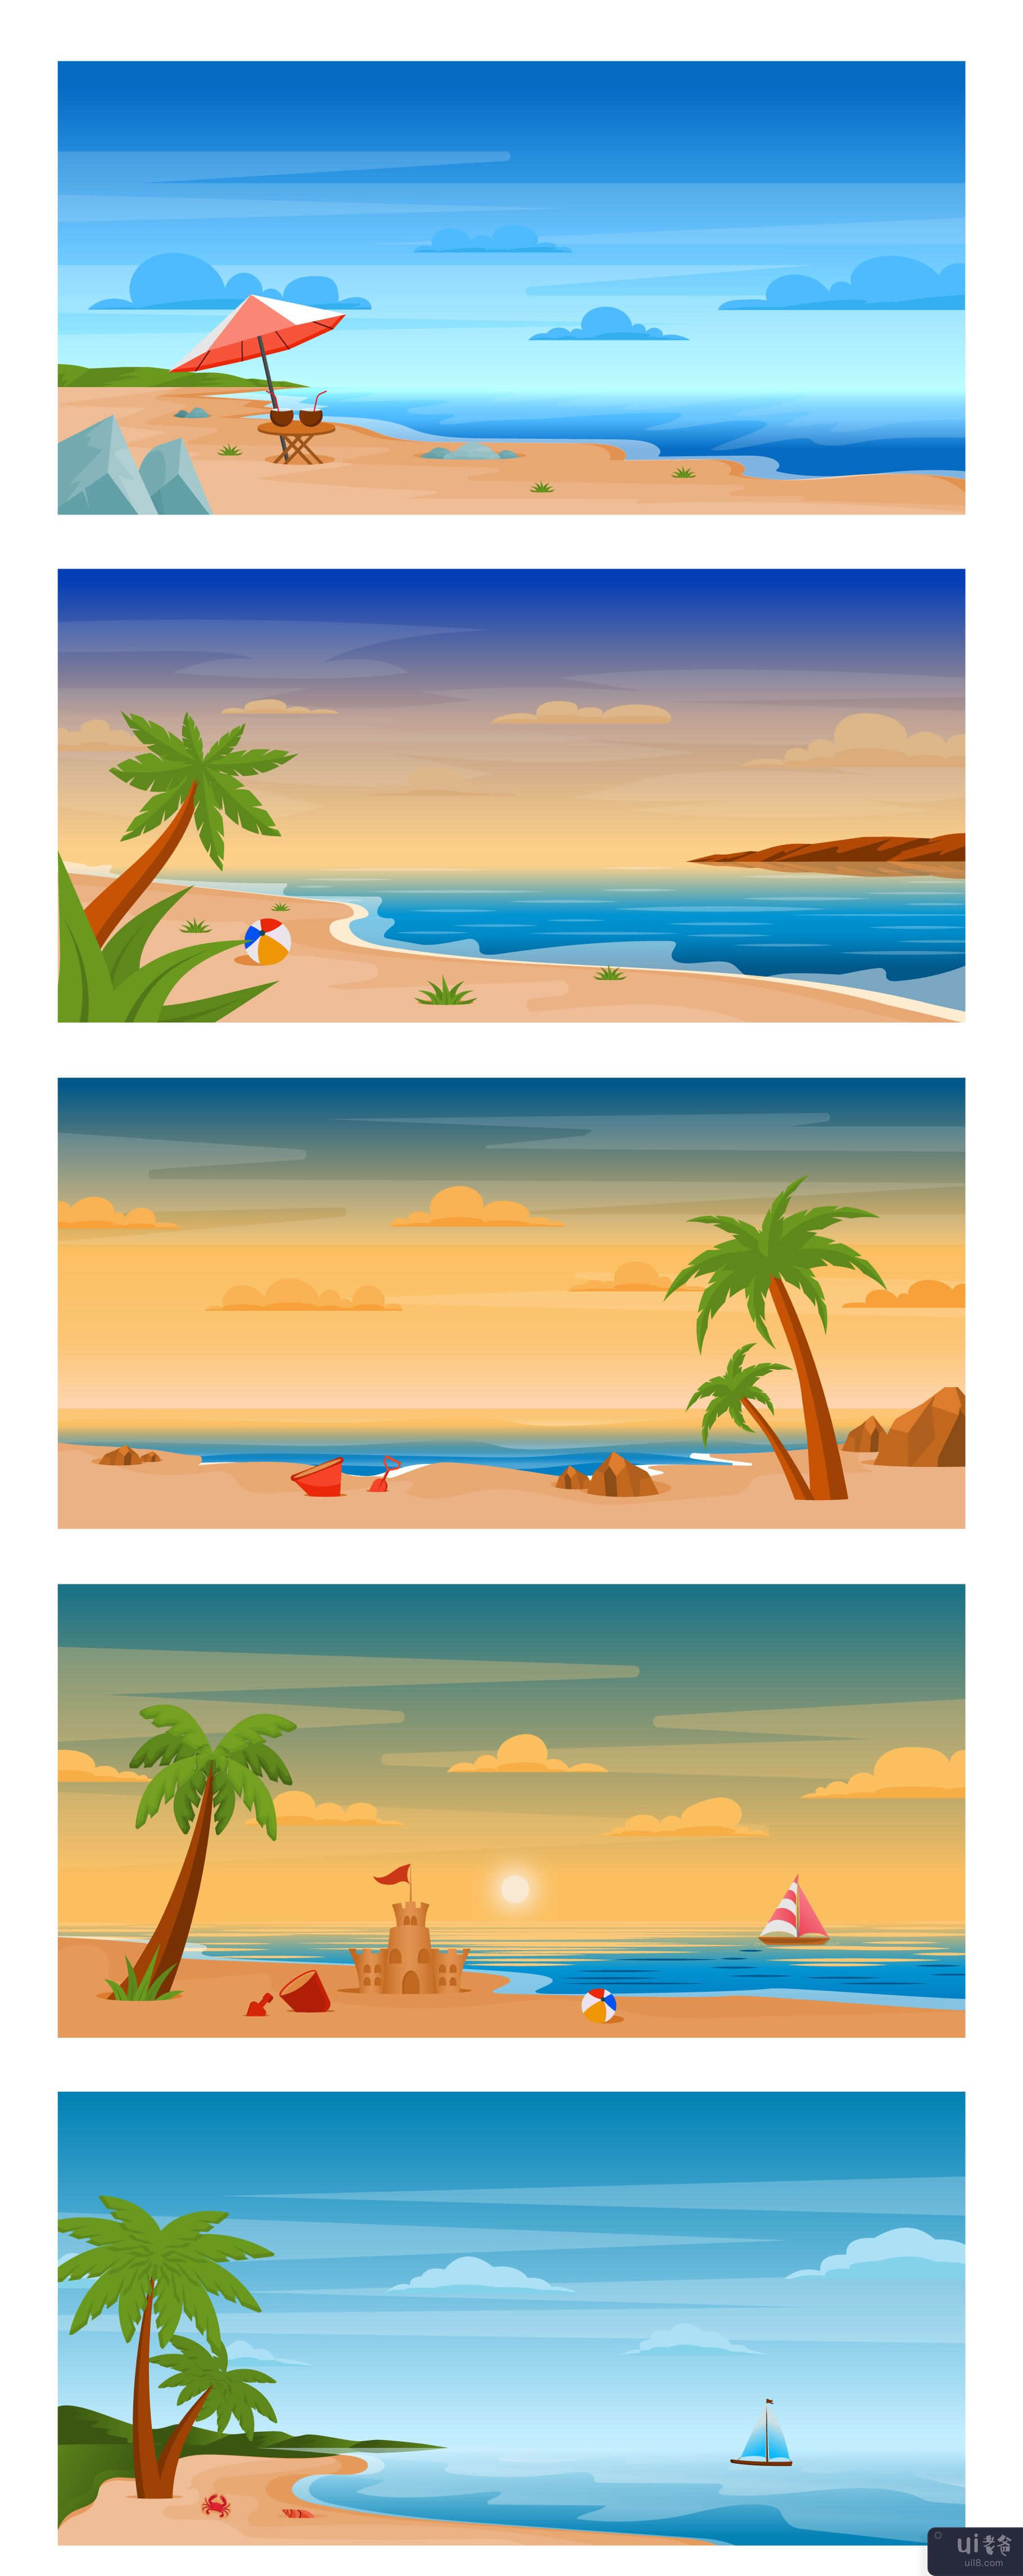 25个大海和海滩背景(25 Sea and Beach Backgrounds)插图3